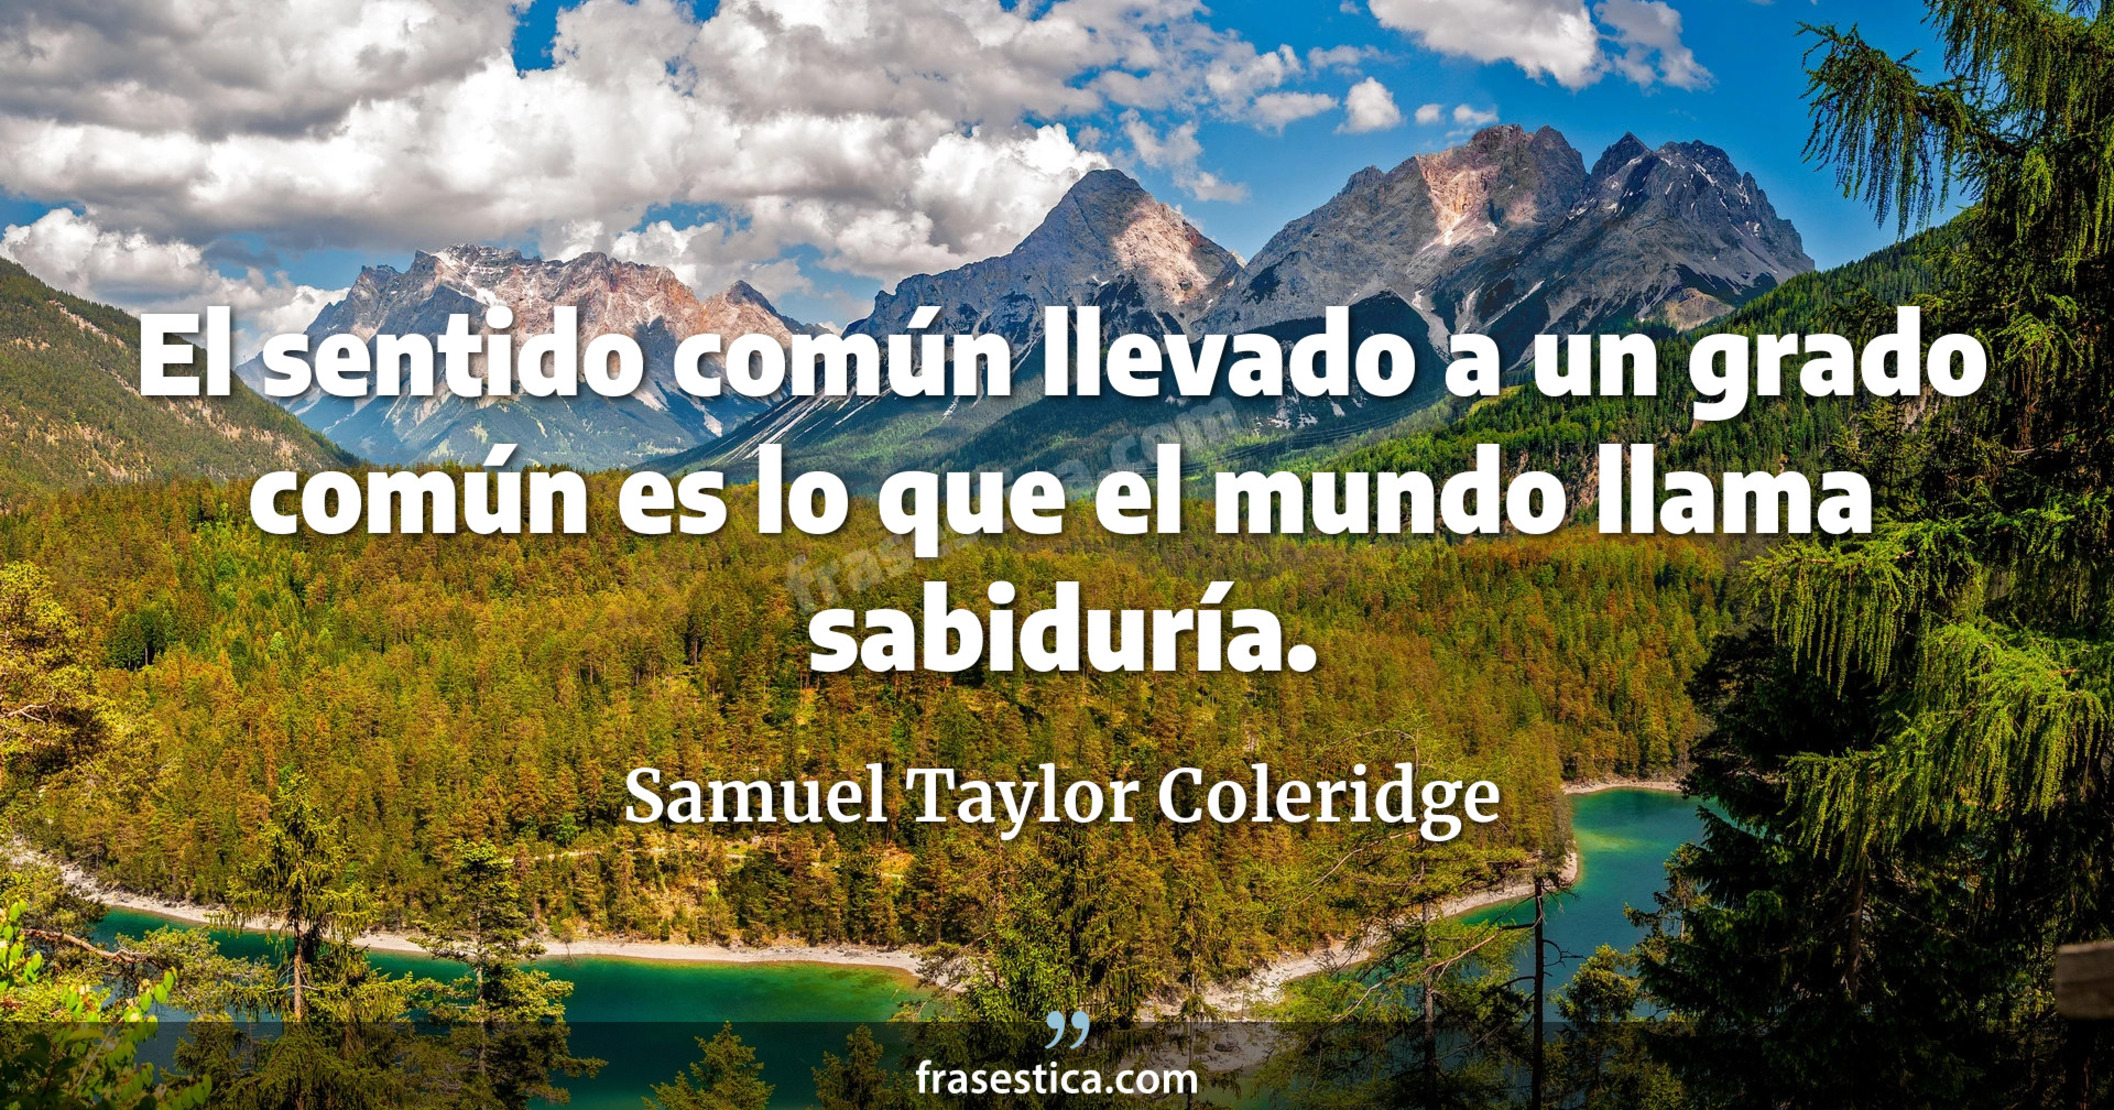 El sentido común llevado a un grado común es lo que el mundo llama sabiduría. - Samuel Taylor Coleridge